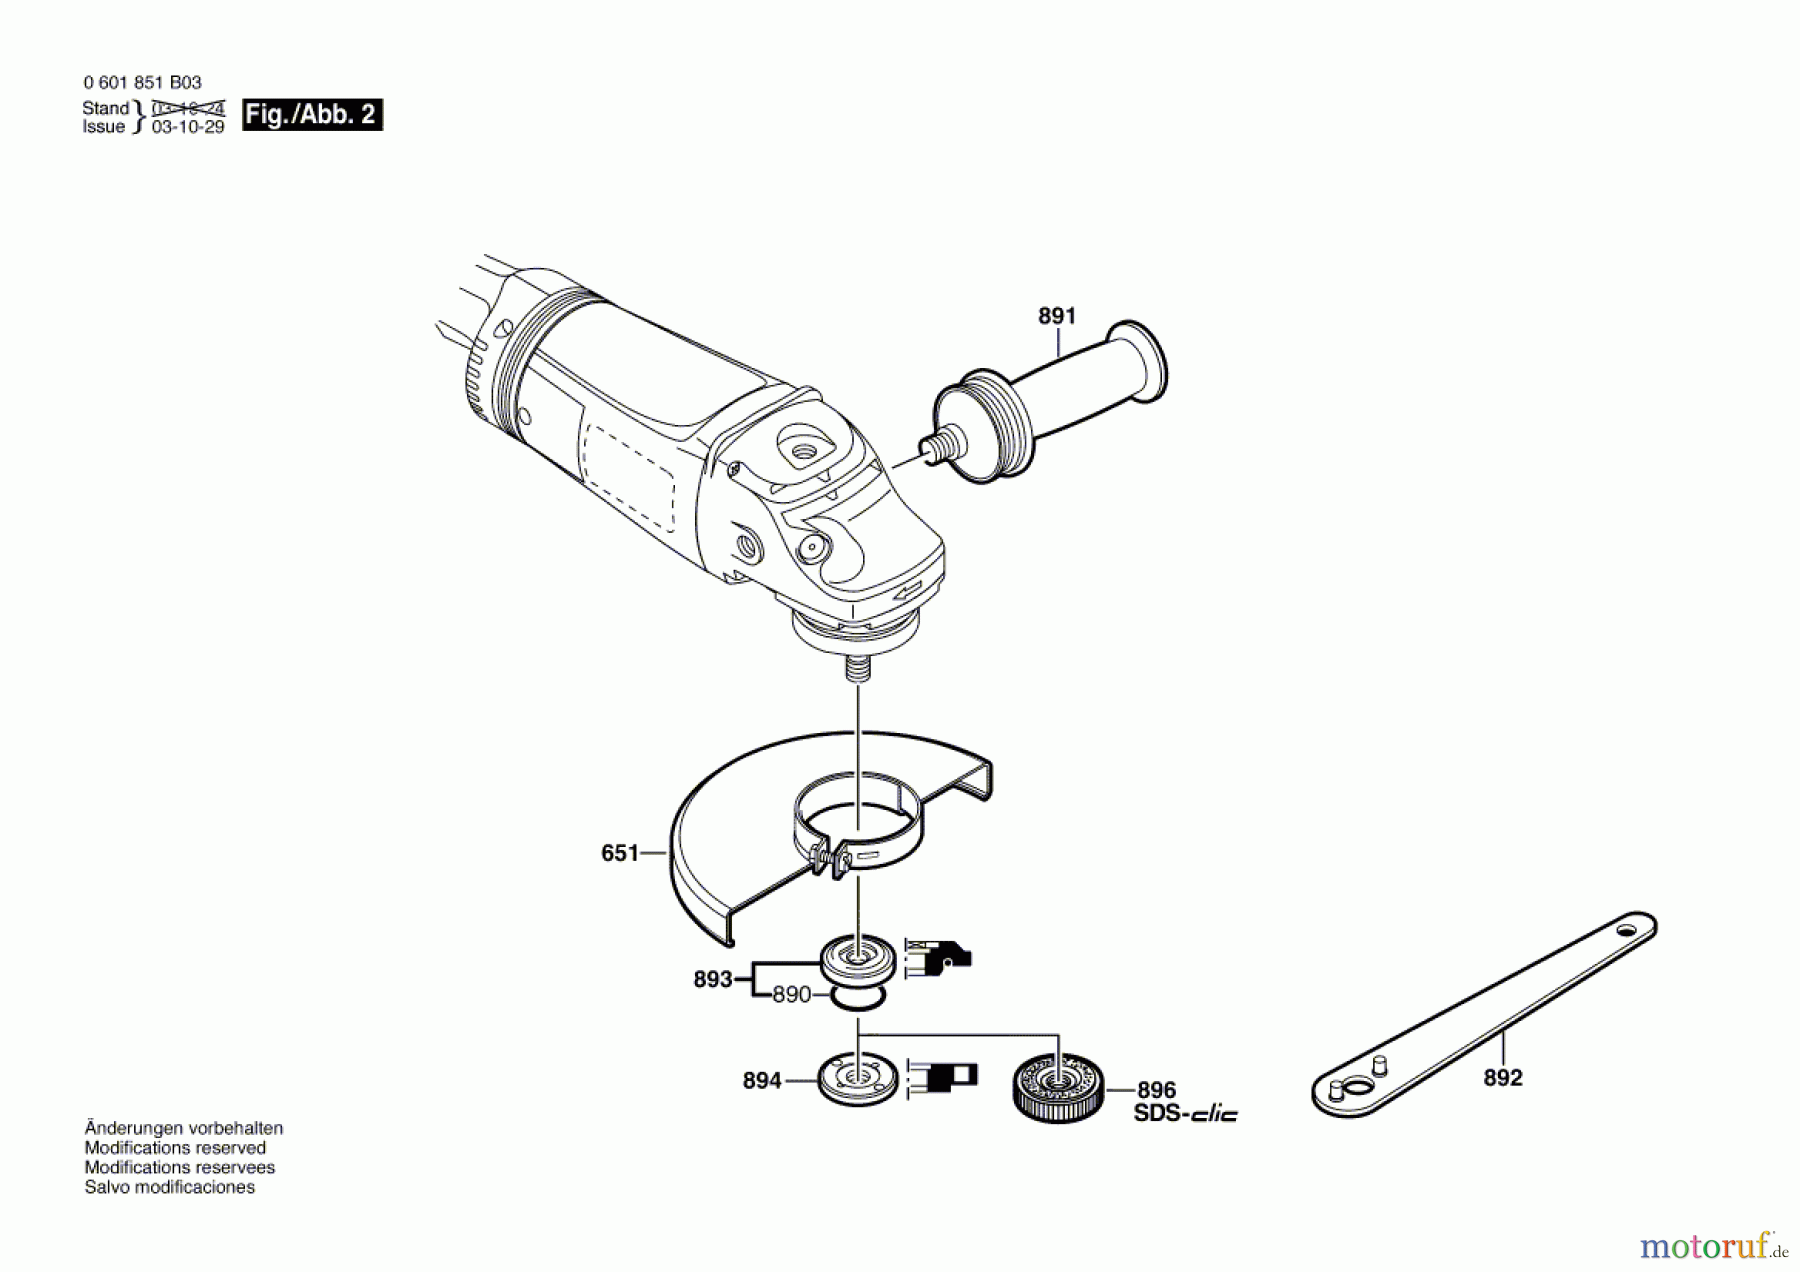  Bosch Werkzeug Winkelschleifer GWS 21-230 HV Seite 2